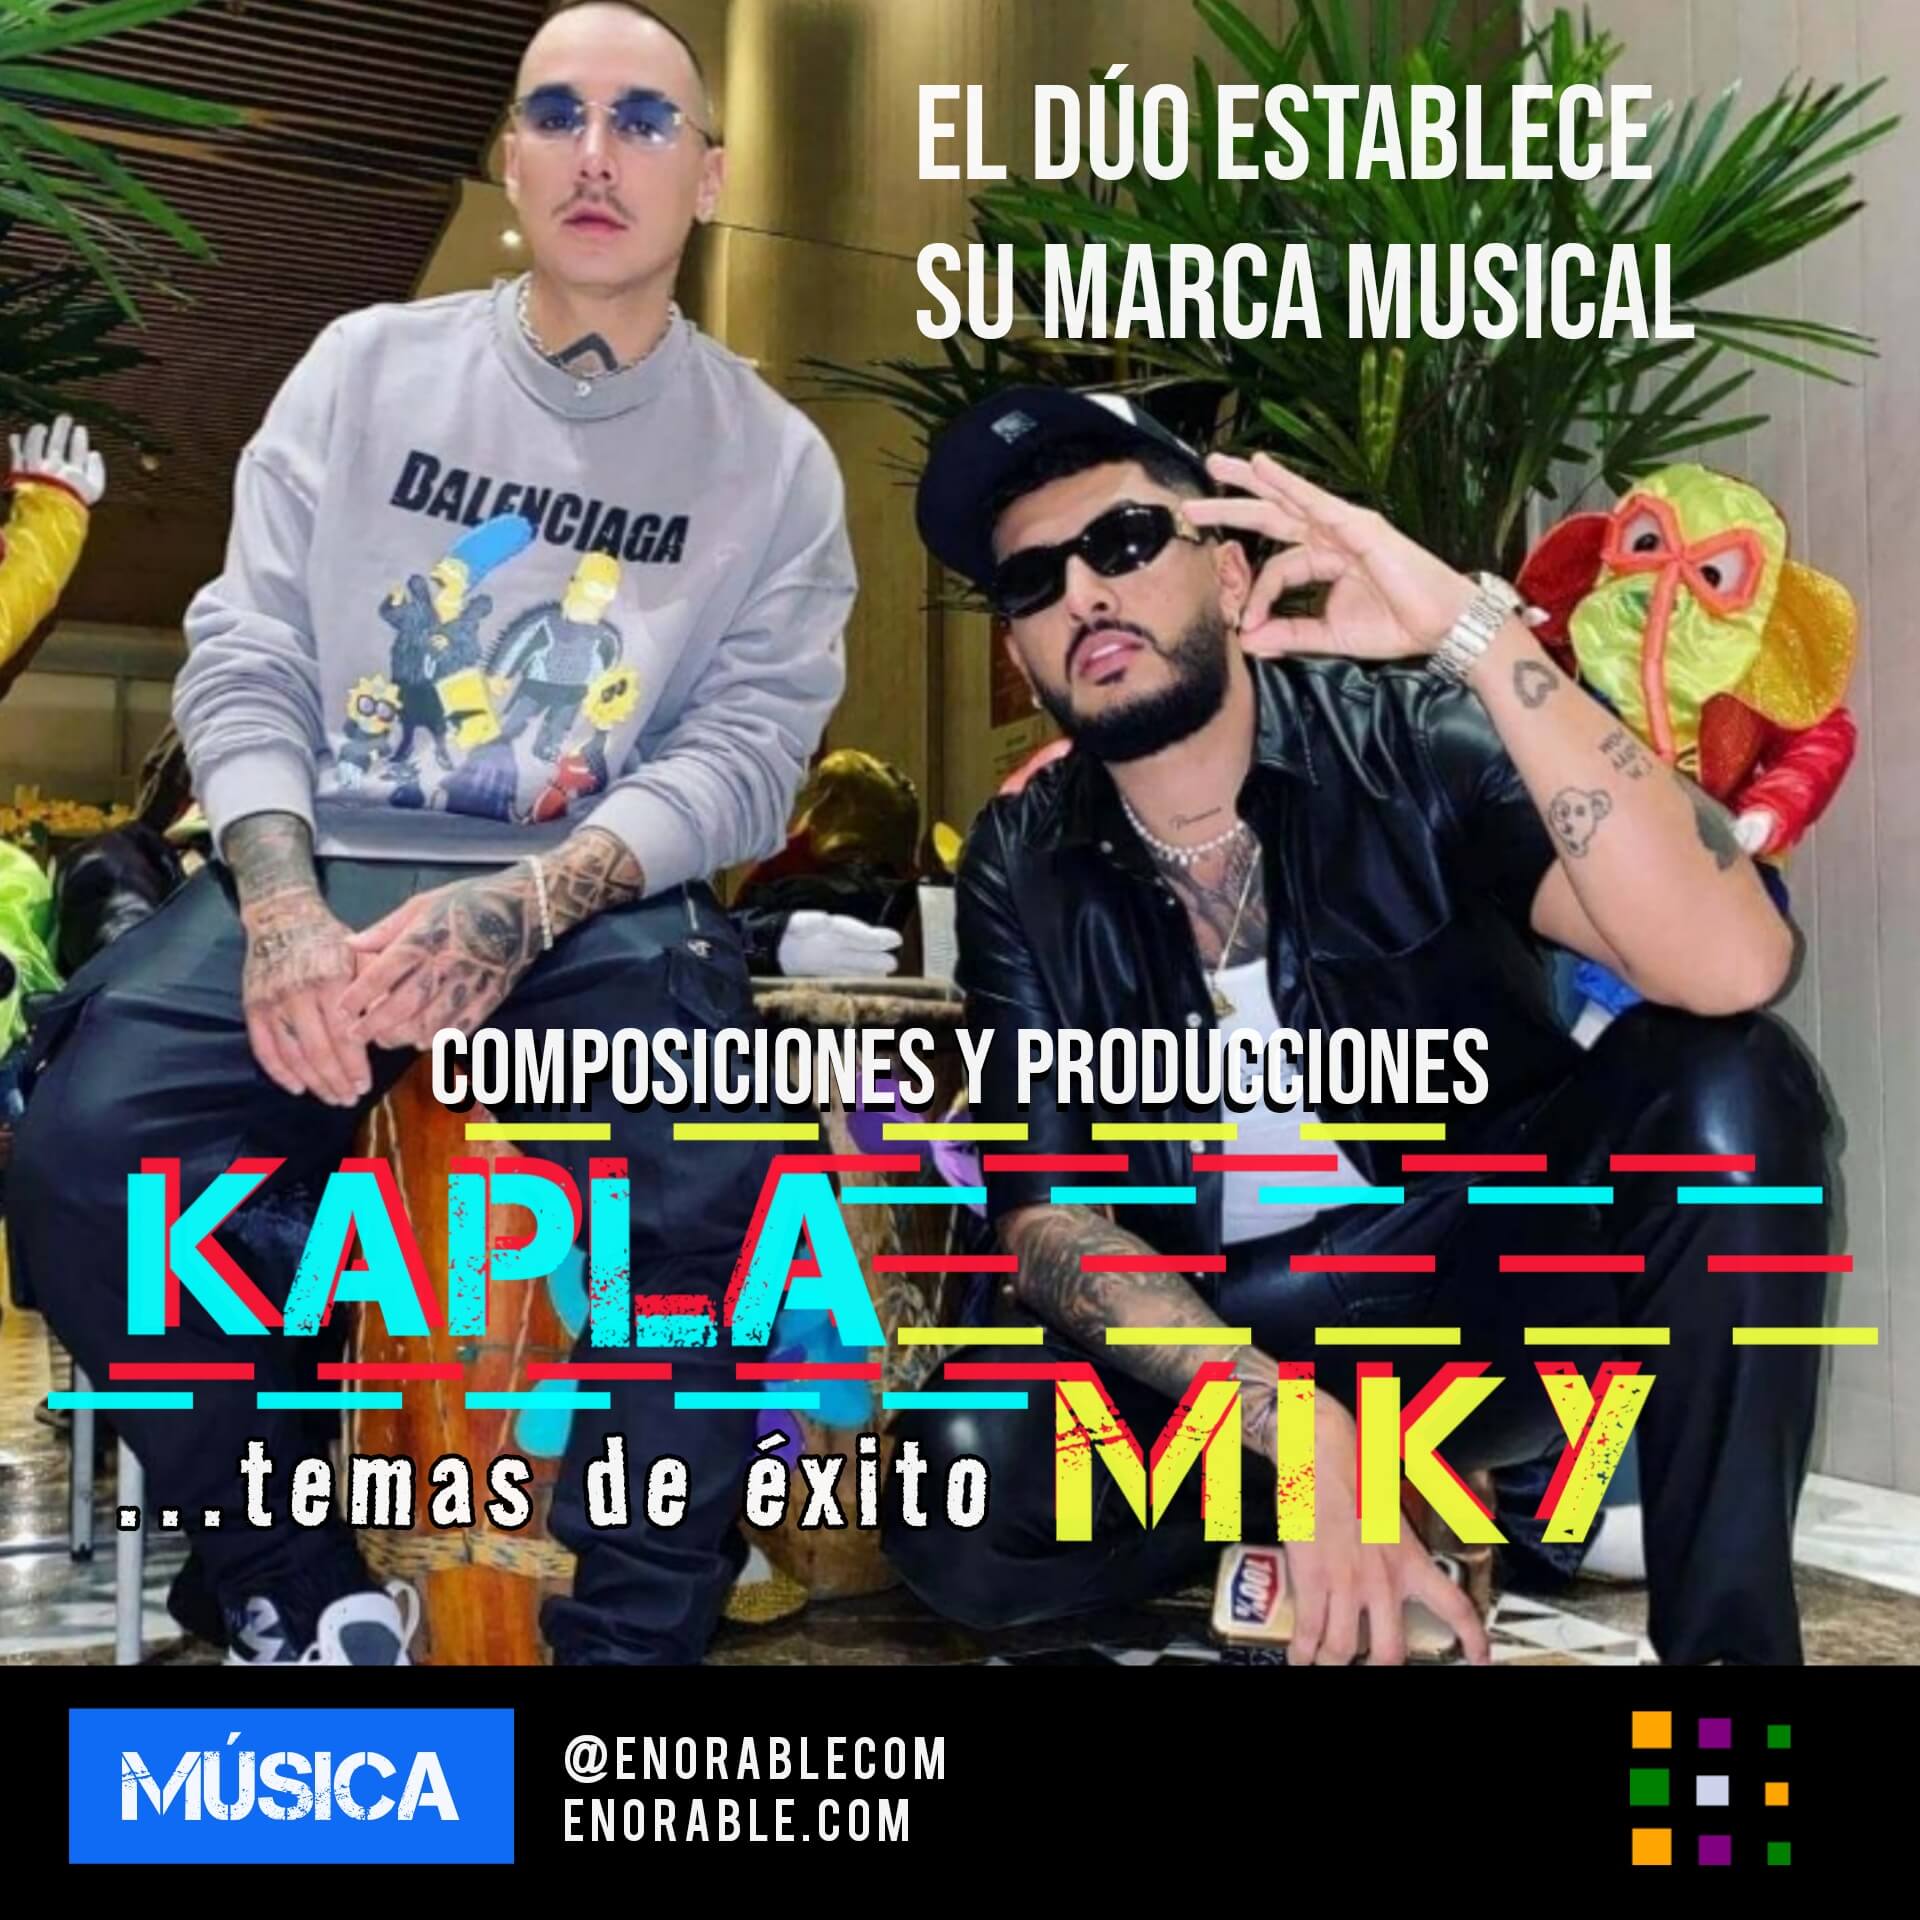 Imagen, foto o portada de Kapla y Miky establecen su marca musical dentro del género urbano gracias a su aportes a la industria